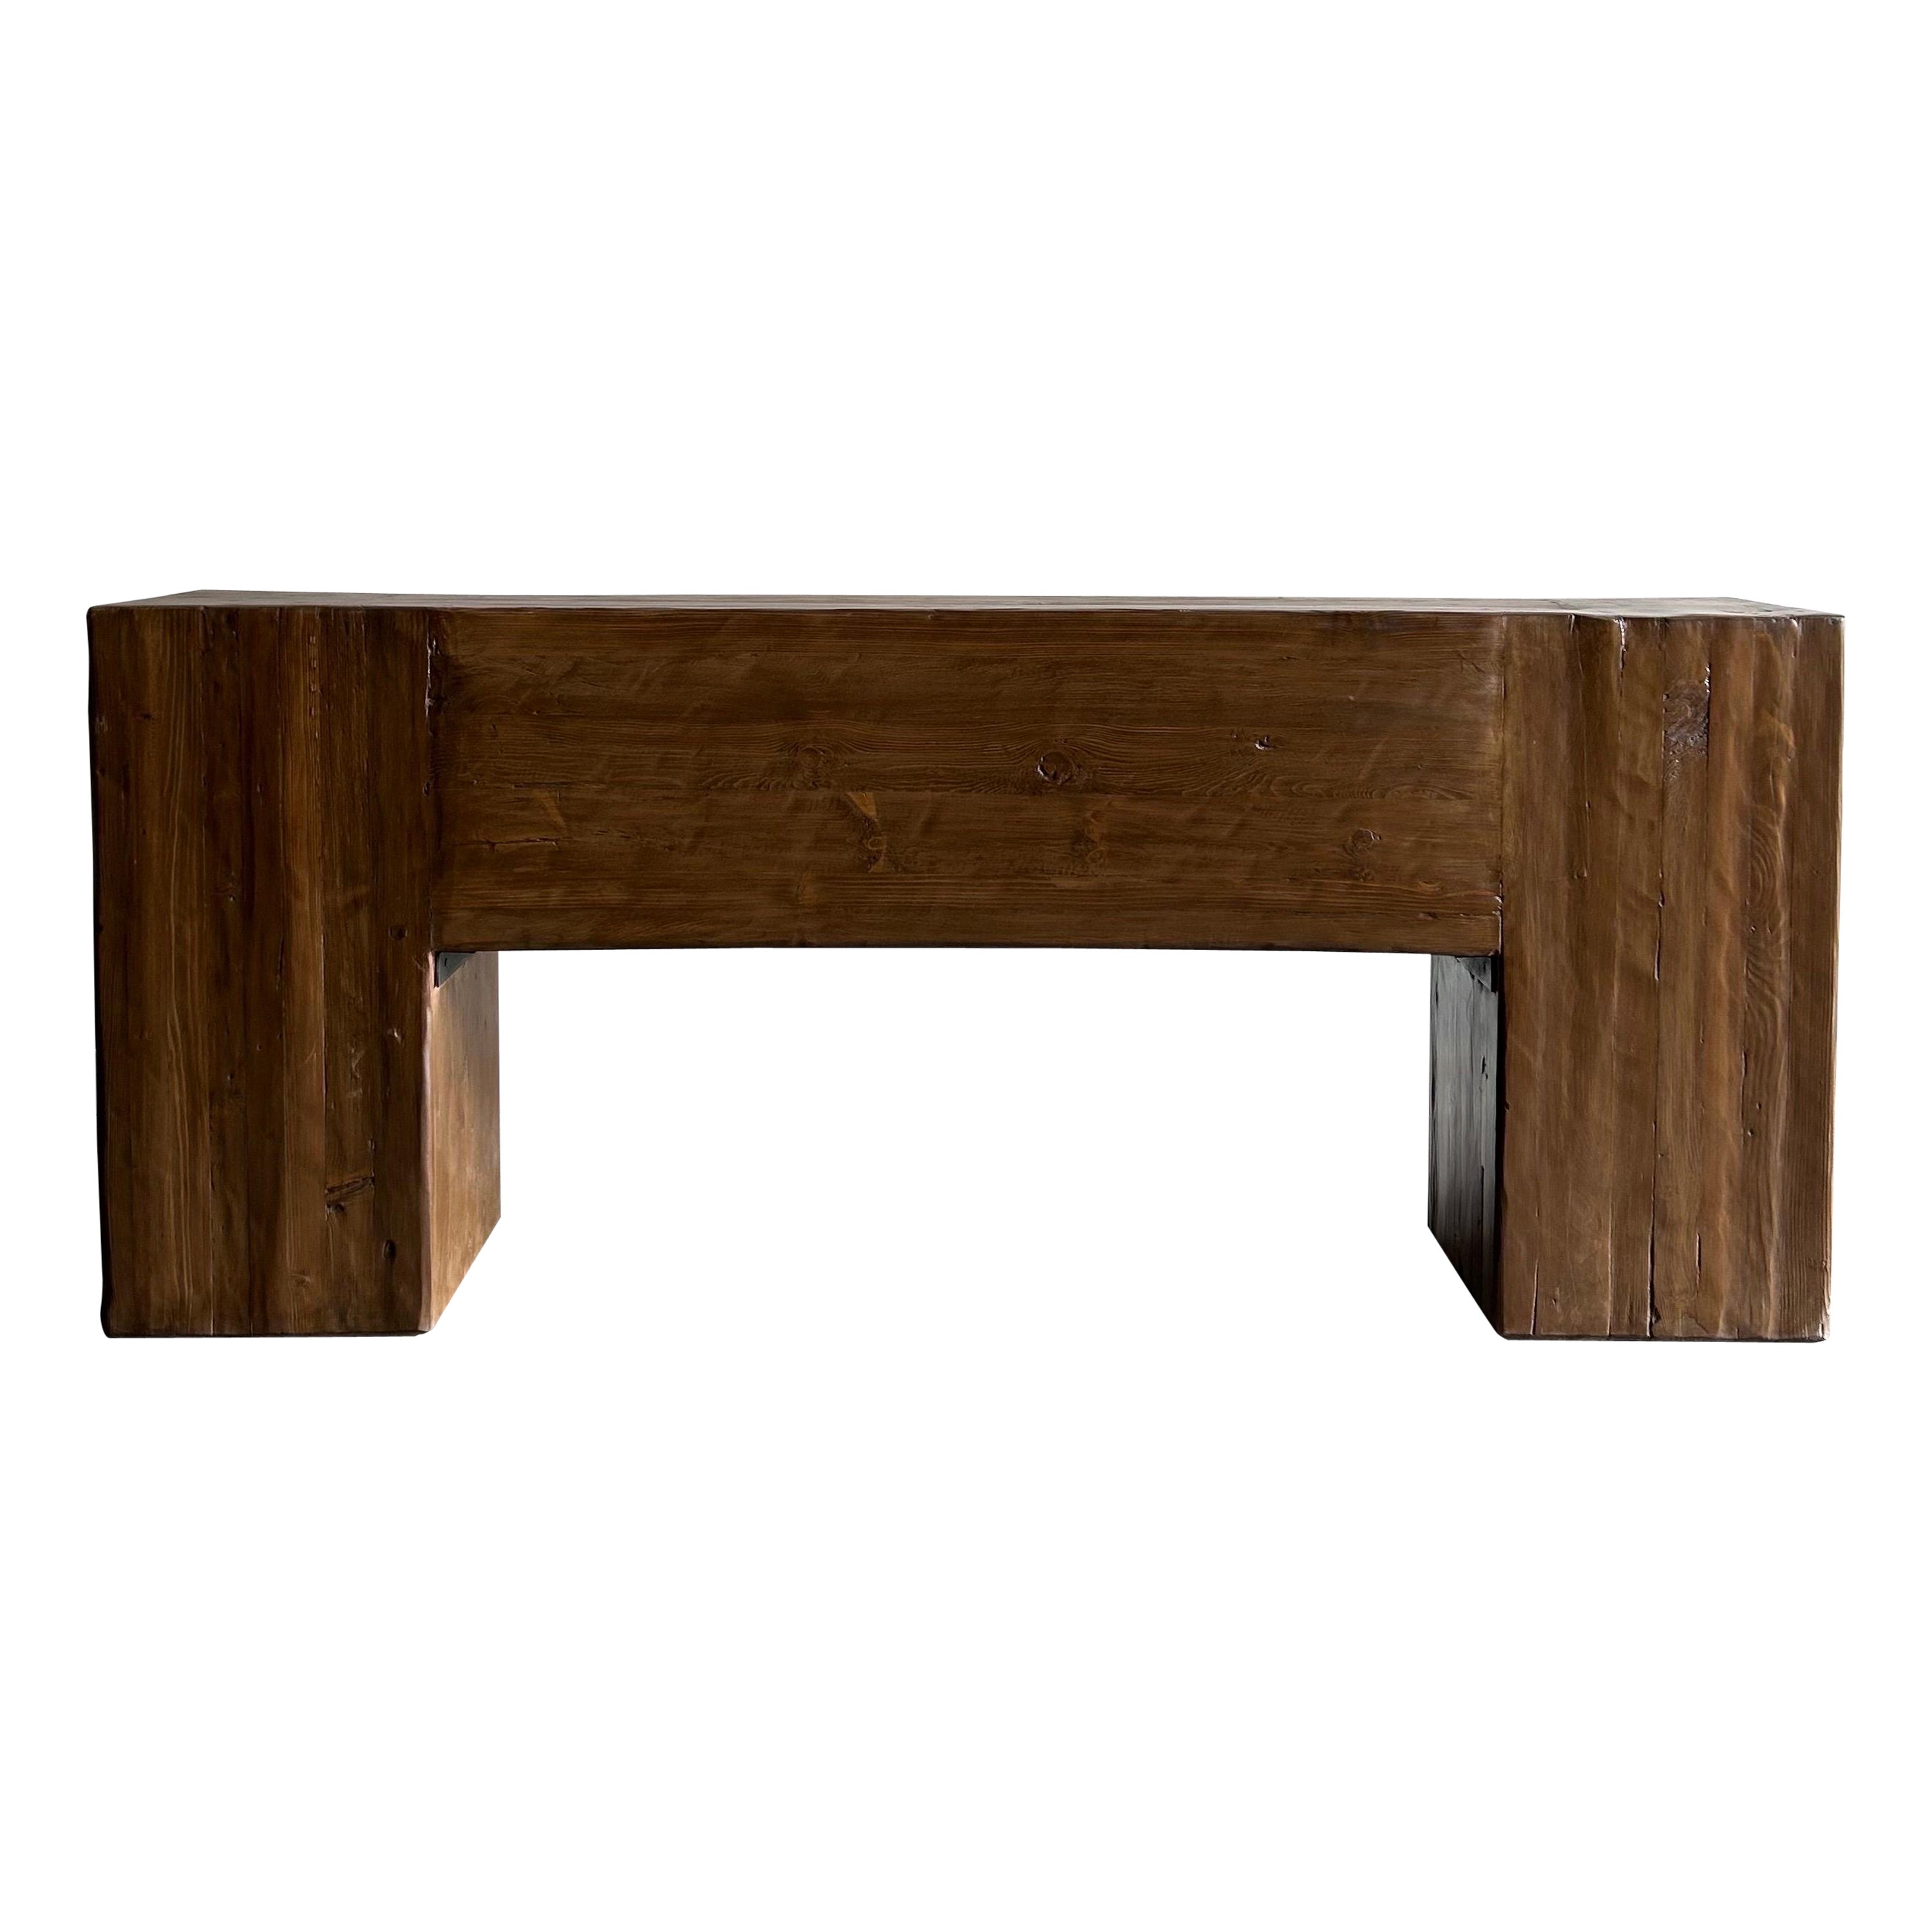 Table console à poutres en bois récupéré, finition noyer